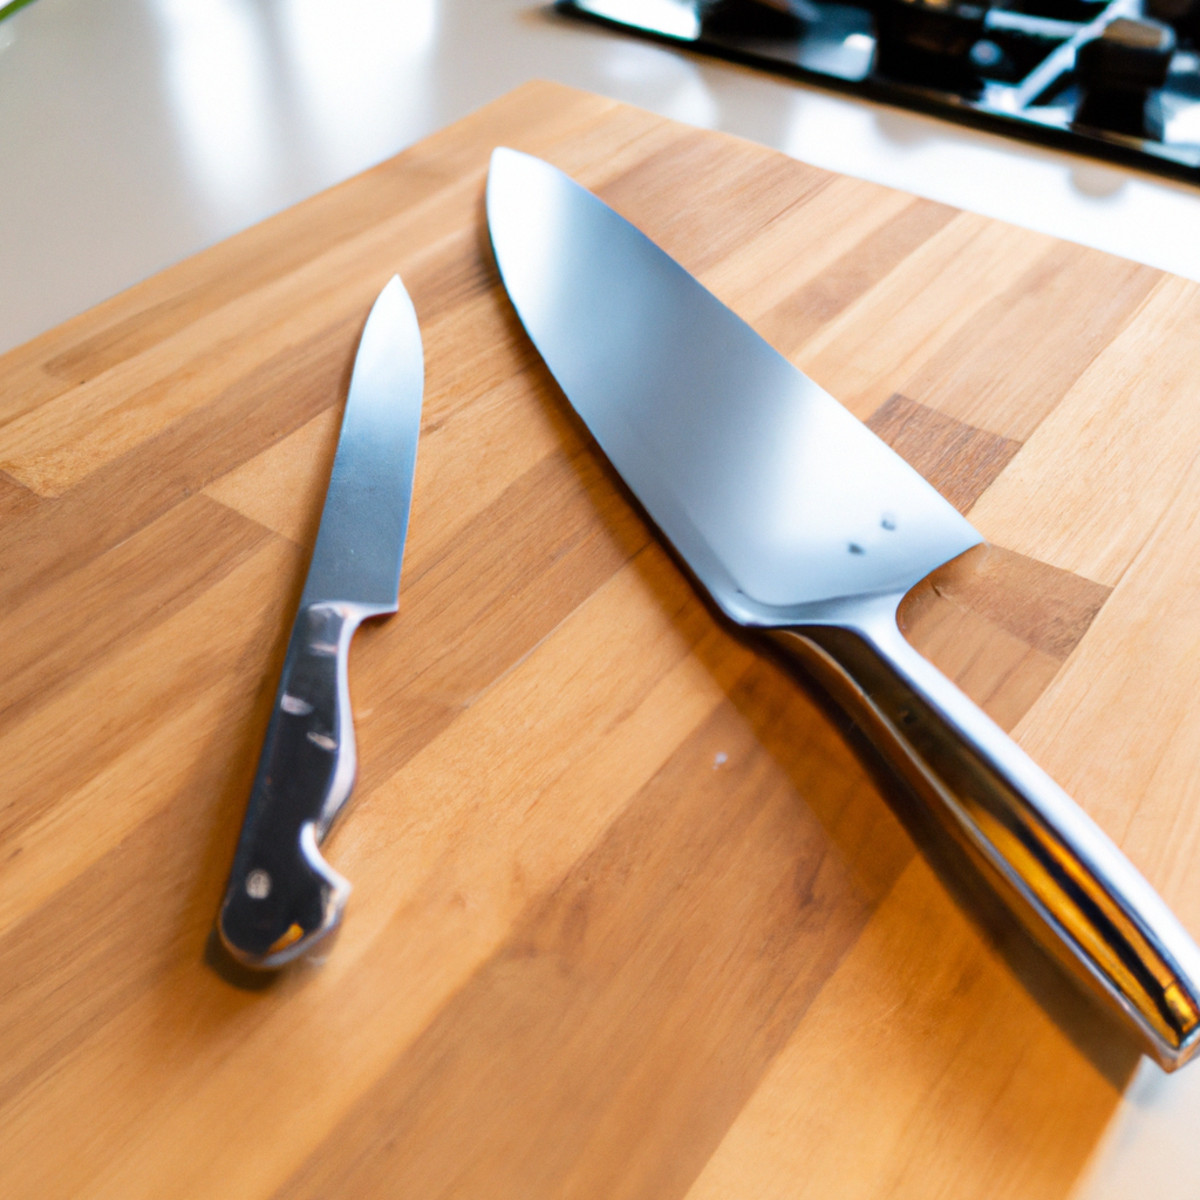 Acero inoxidable japonés frente a acero con alto contenido de carbono: ambos se utilizan para fabricar cuchillos de cocina